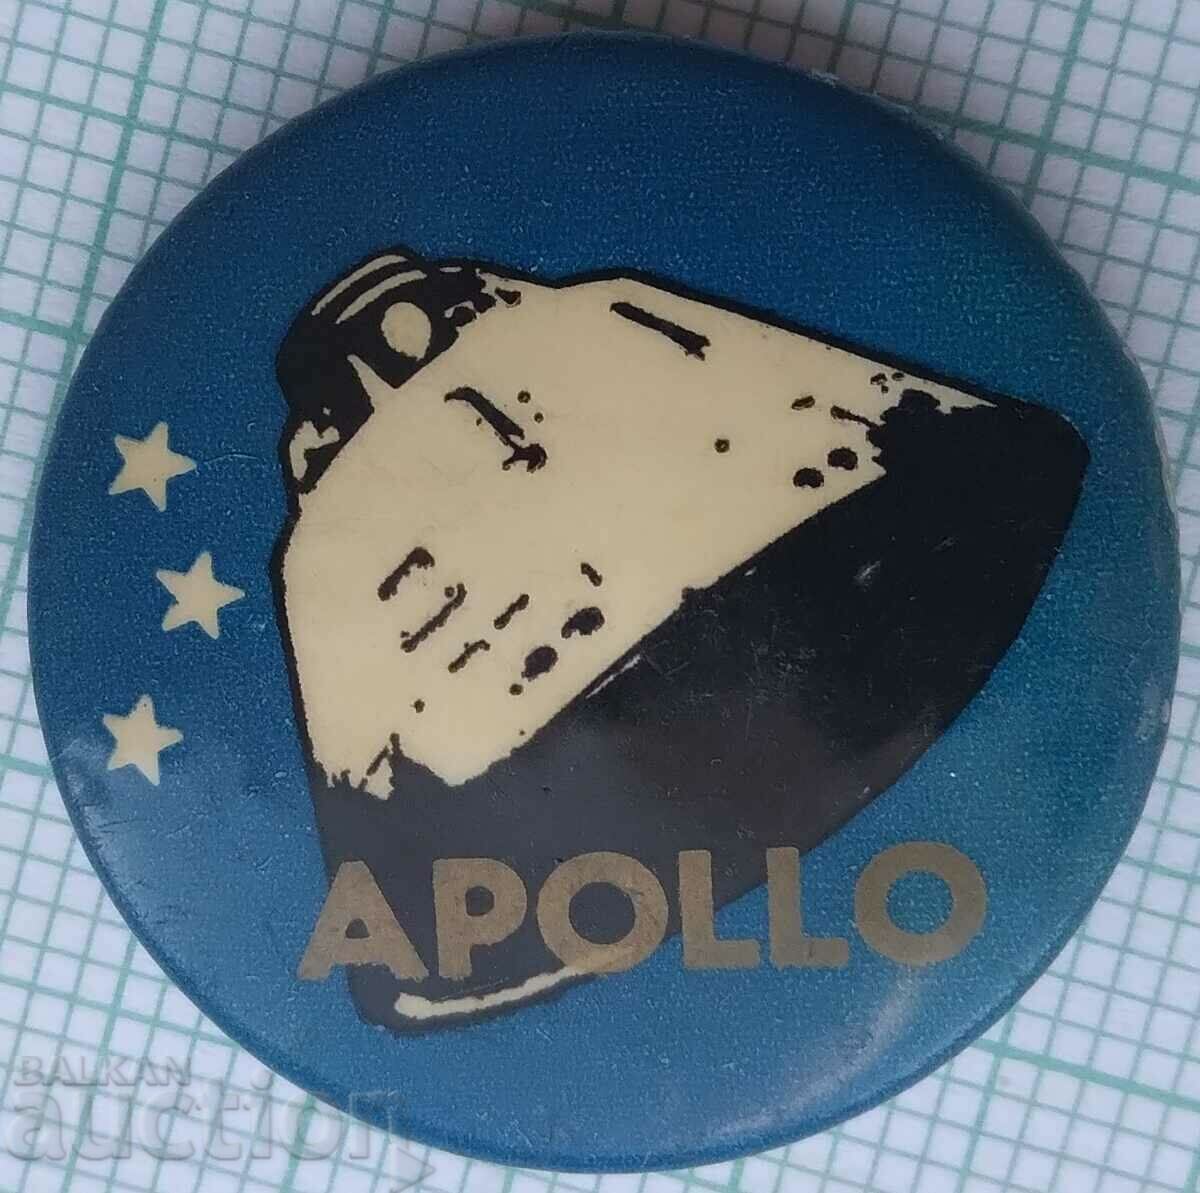 Σήμα 14610 - Διαστημικό Πρόγραμμα Η.Π.Α. Apollo